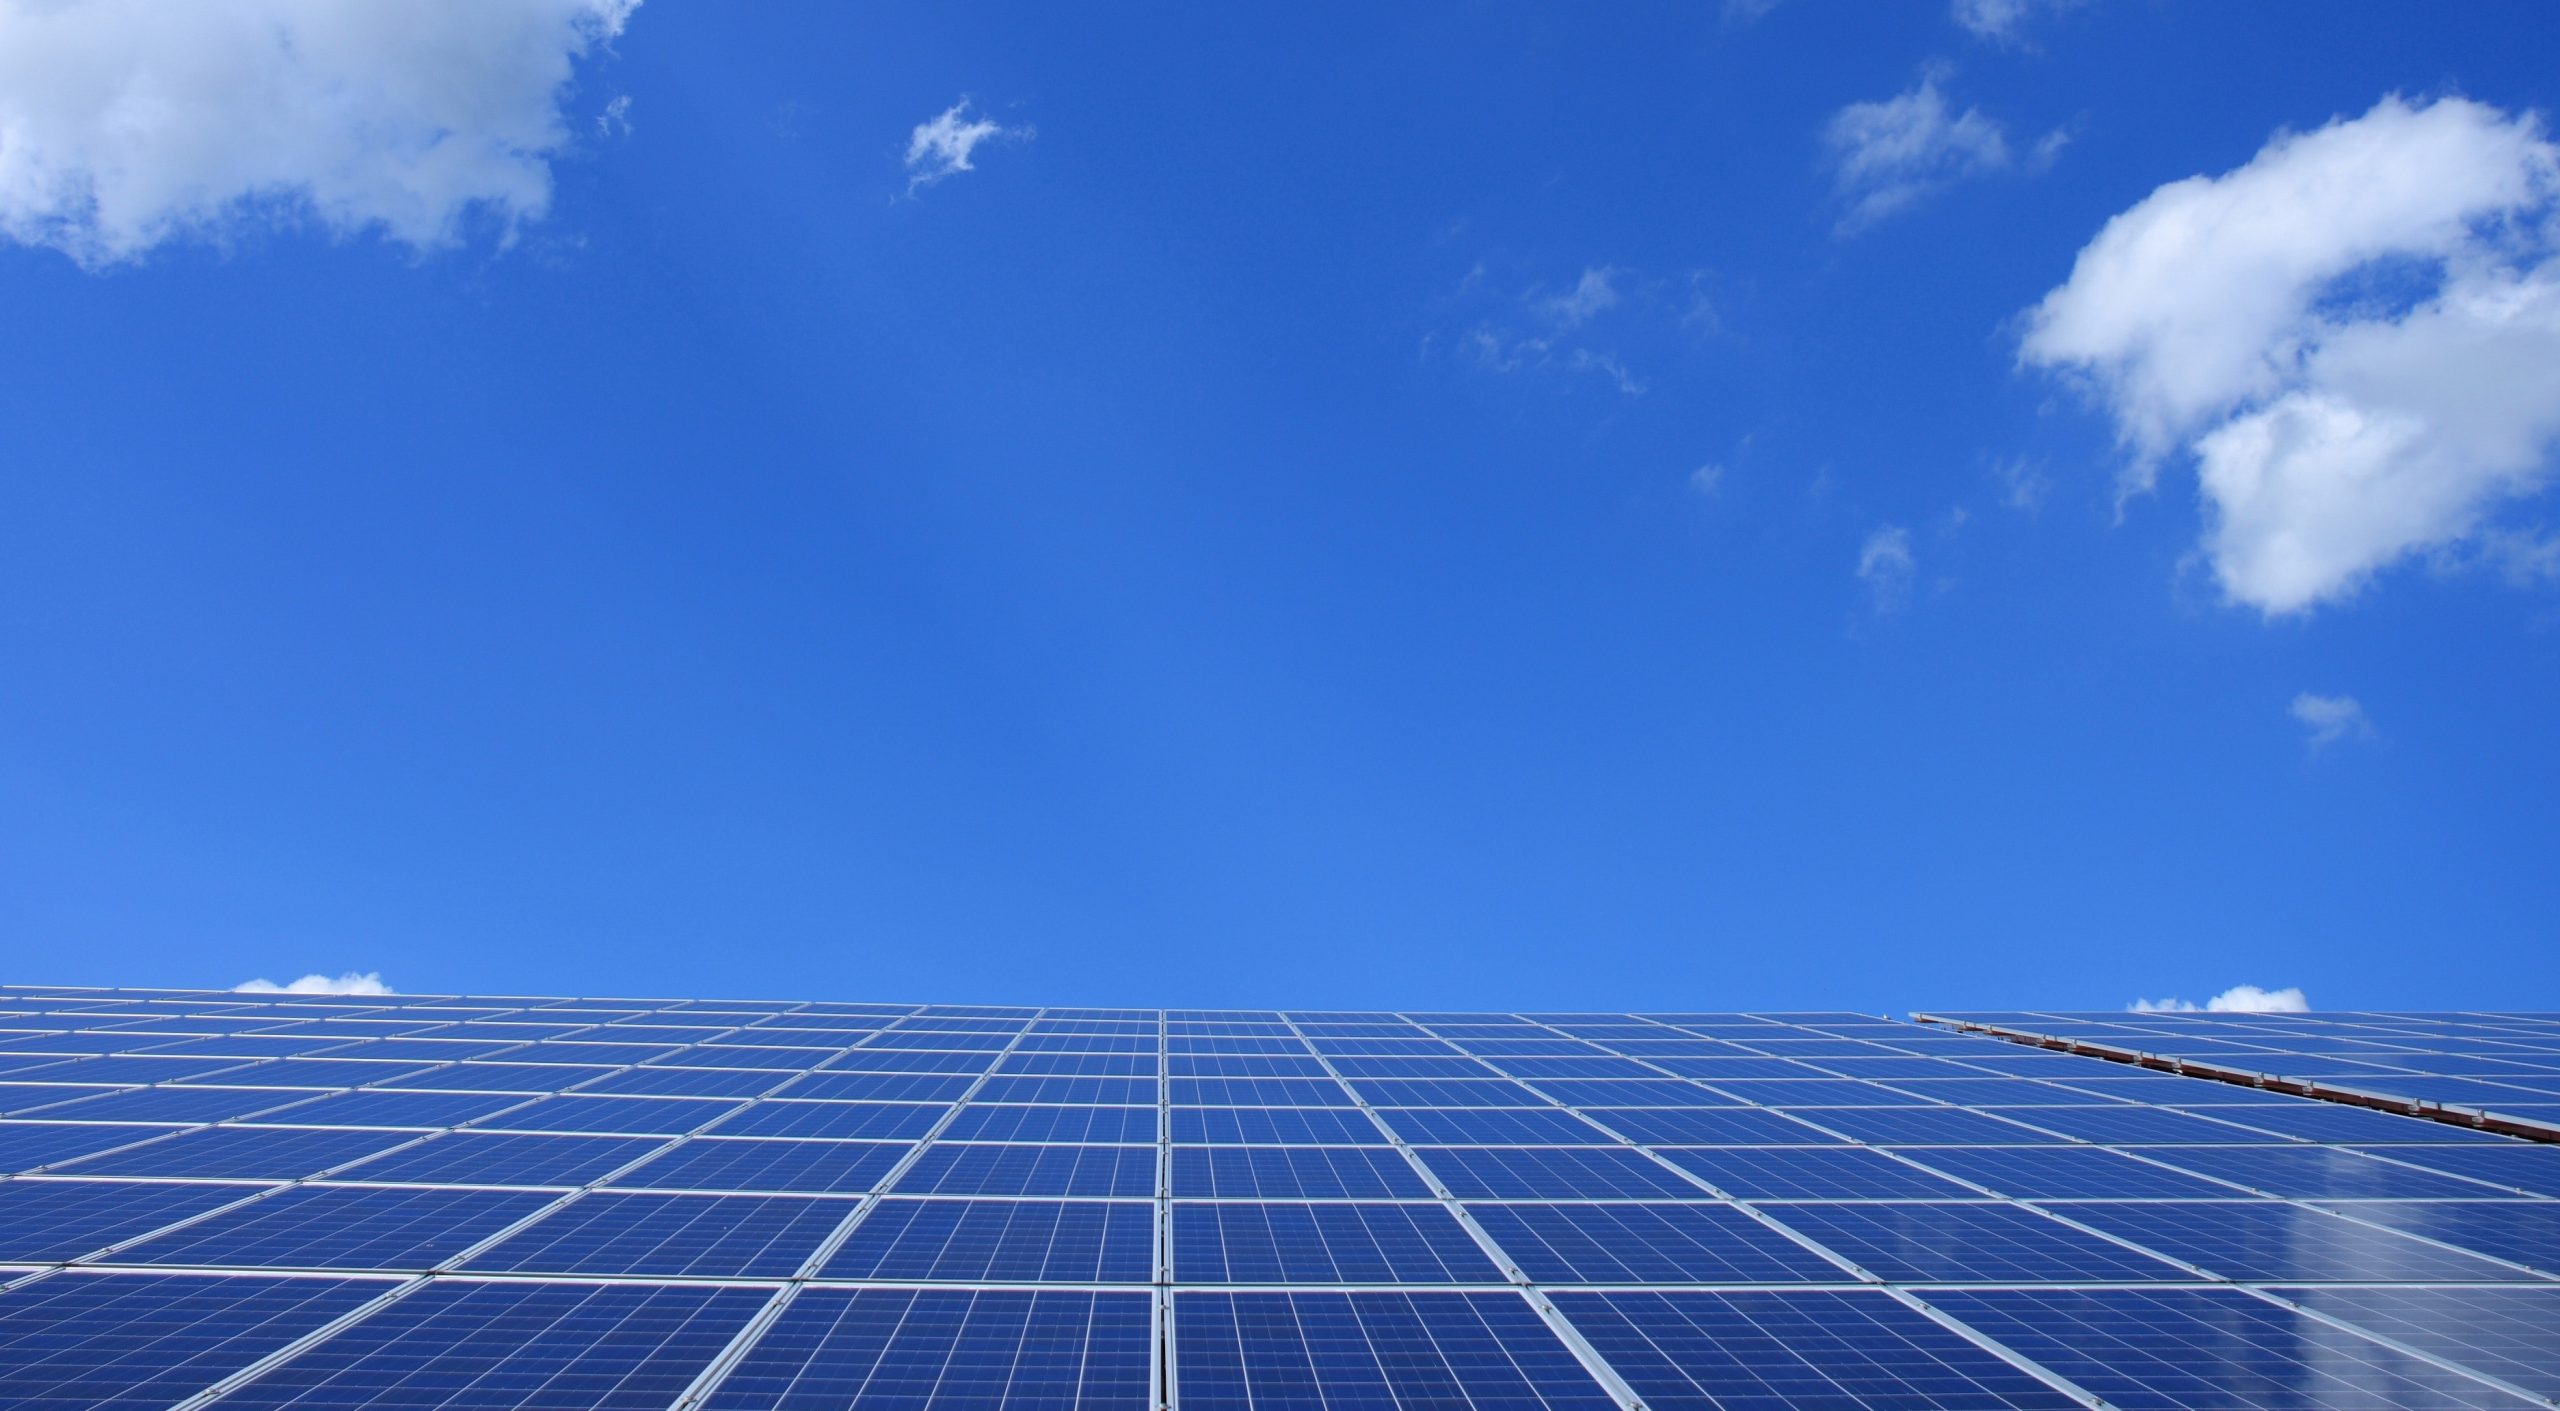 Los paneles solares fotovoltaicos pueden instalarse en los tejados de las viviendas para autoconsumo o crear granjas solares.